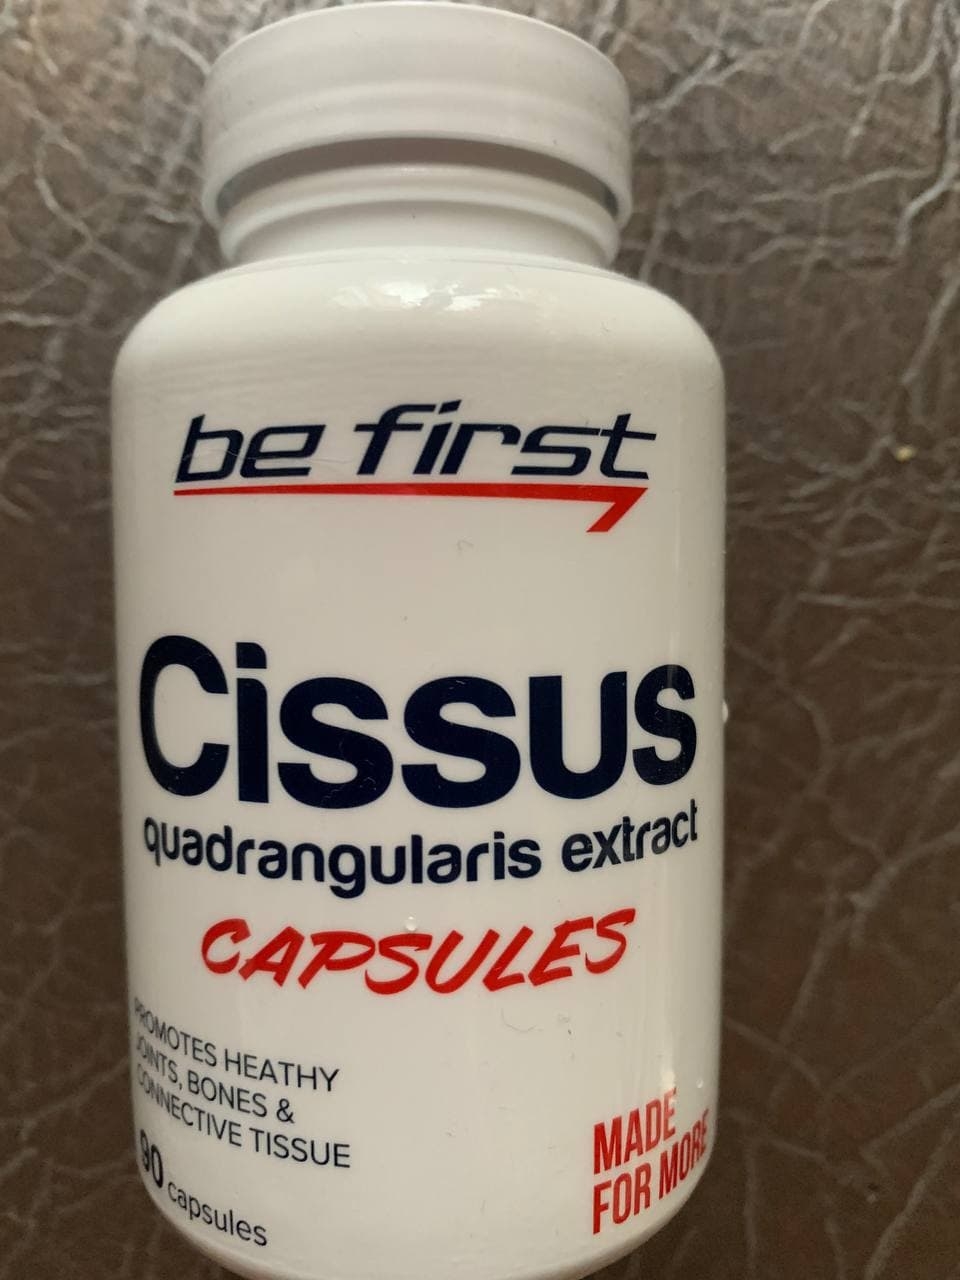 Be First Cissus Quadrangularis Extract Capsules 120 капсул - Эффект расслабления